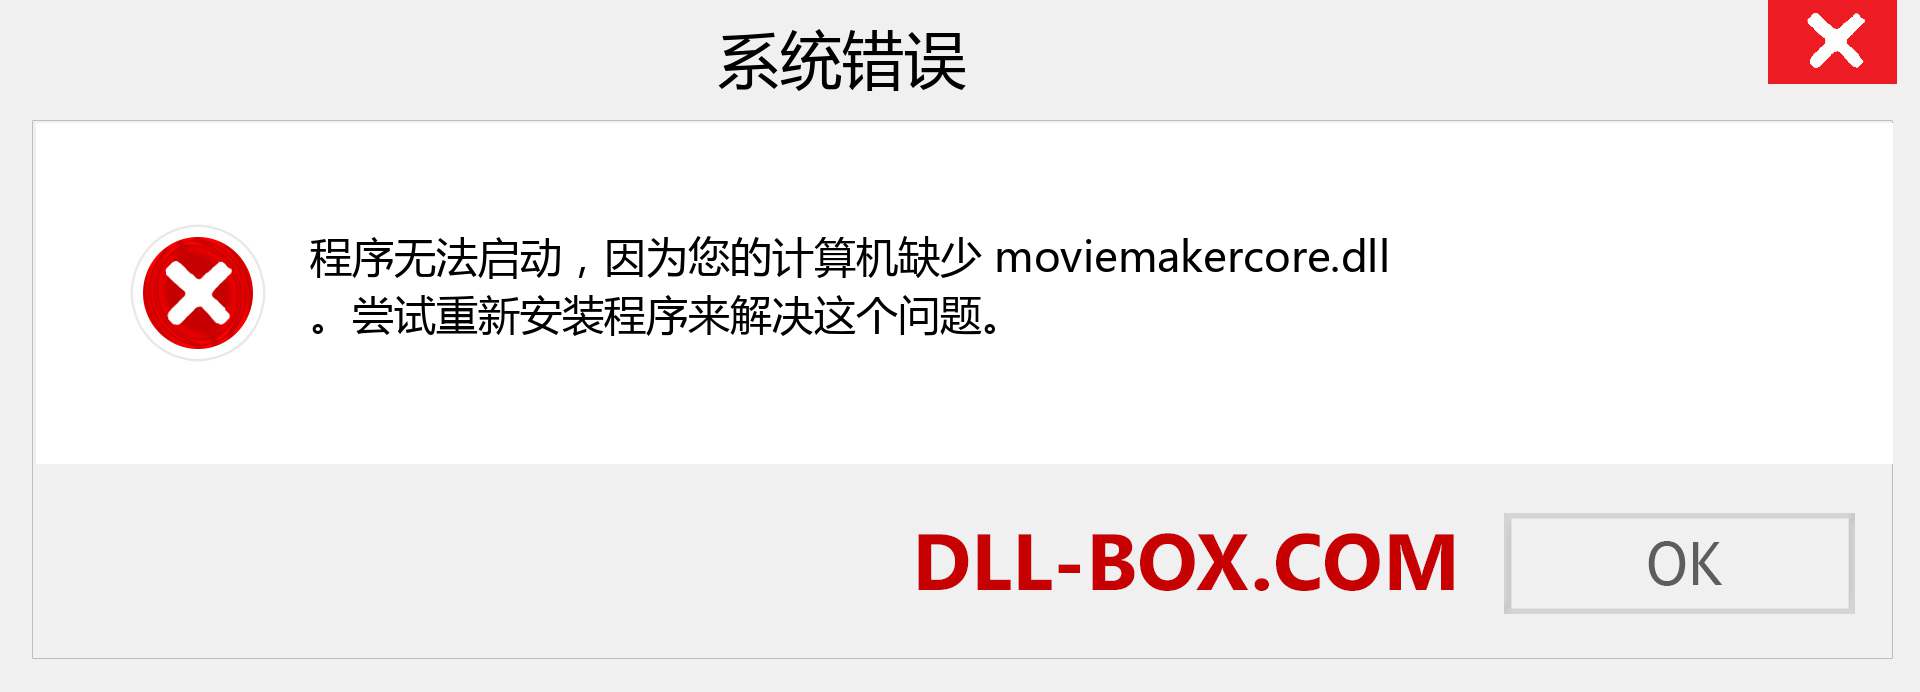 moviemakercore.dll 文件丢失？。 适用于 Windows 7、8、10 的下载 - 修复 Windows、照片、图像上的 moviemakercore dll 丢失错误